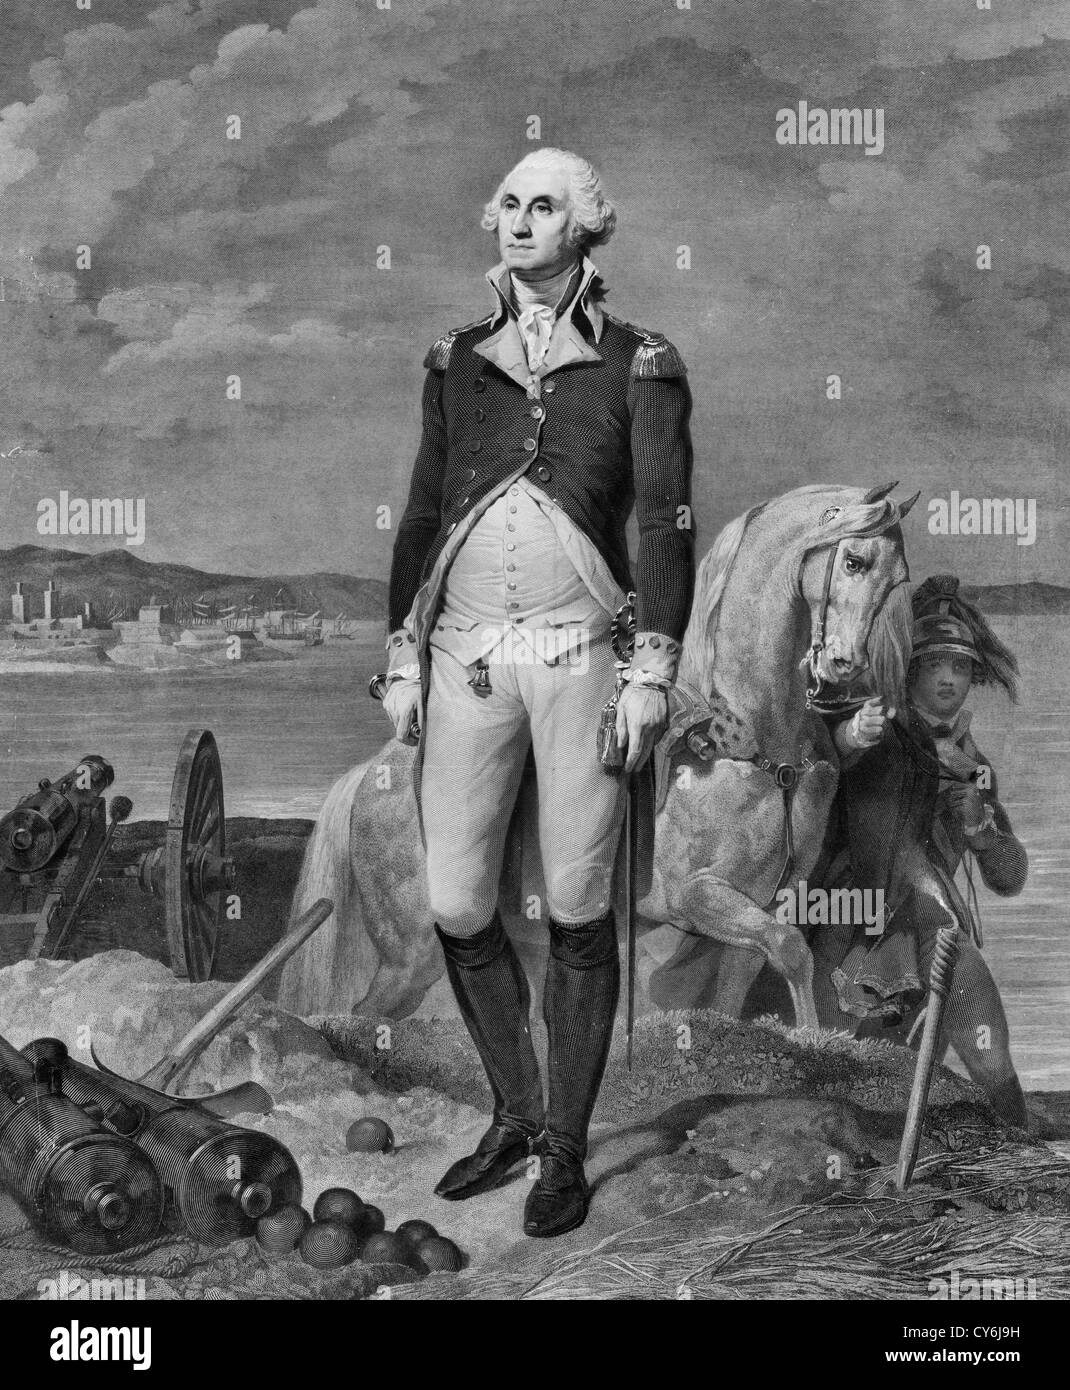 George Washington, ritratto a figura intera, in piedi sul bunker, leggermente rivolta verso sinistra, indossando uniforme militare, aide con cavallo in sfondo vicino, vista del porto di distanza. Foto Stock